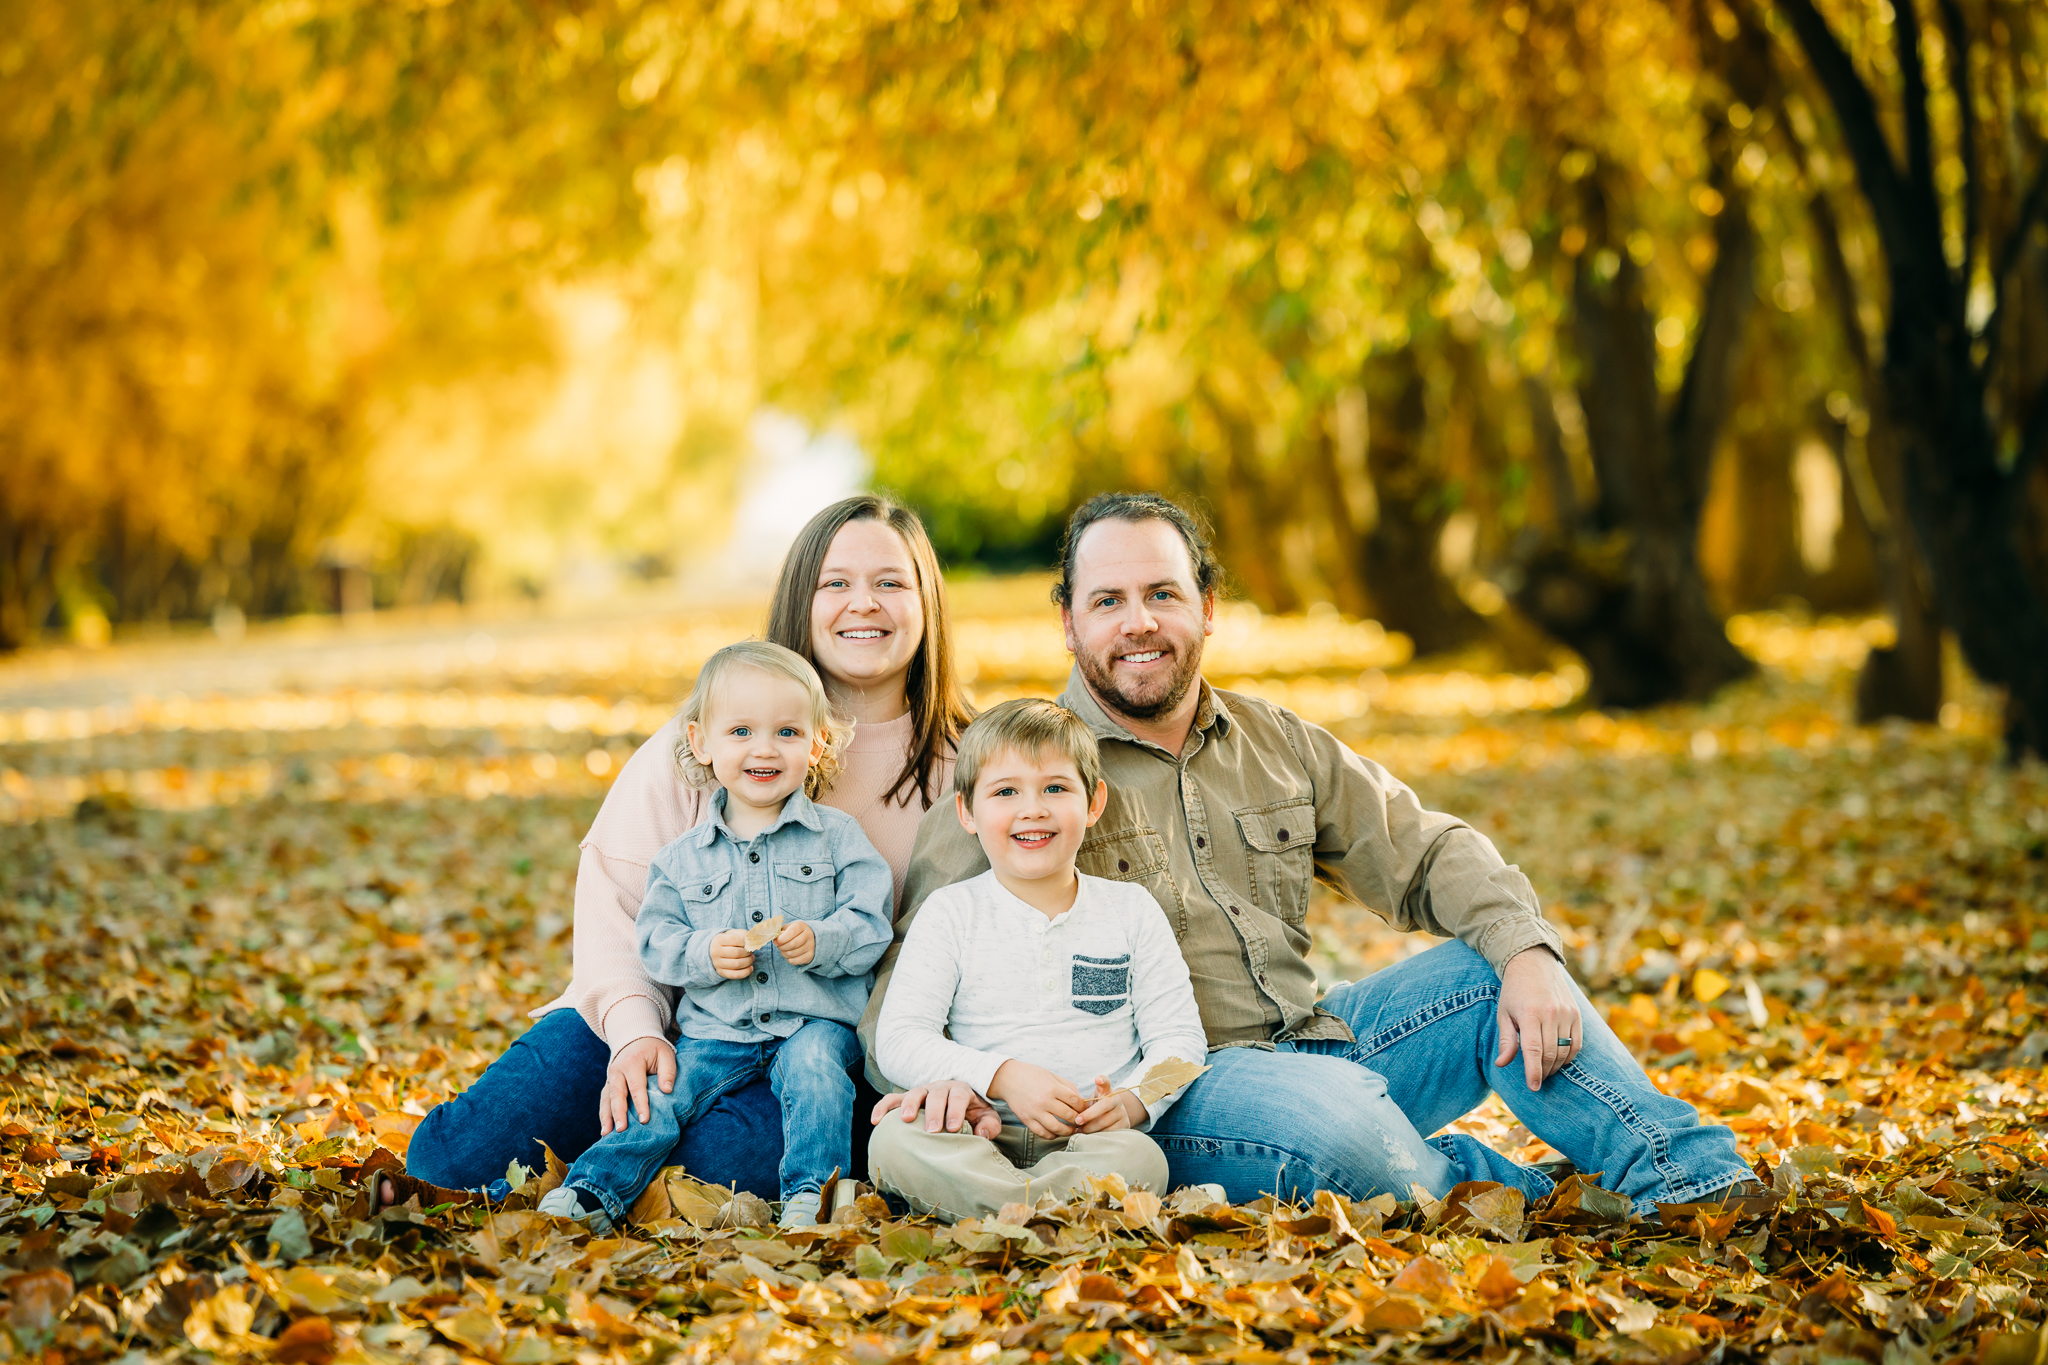 Idaho Falls fall family session